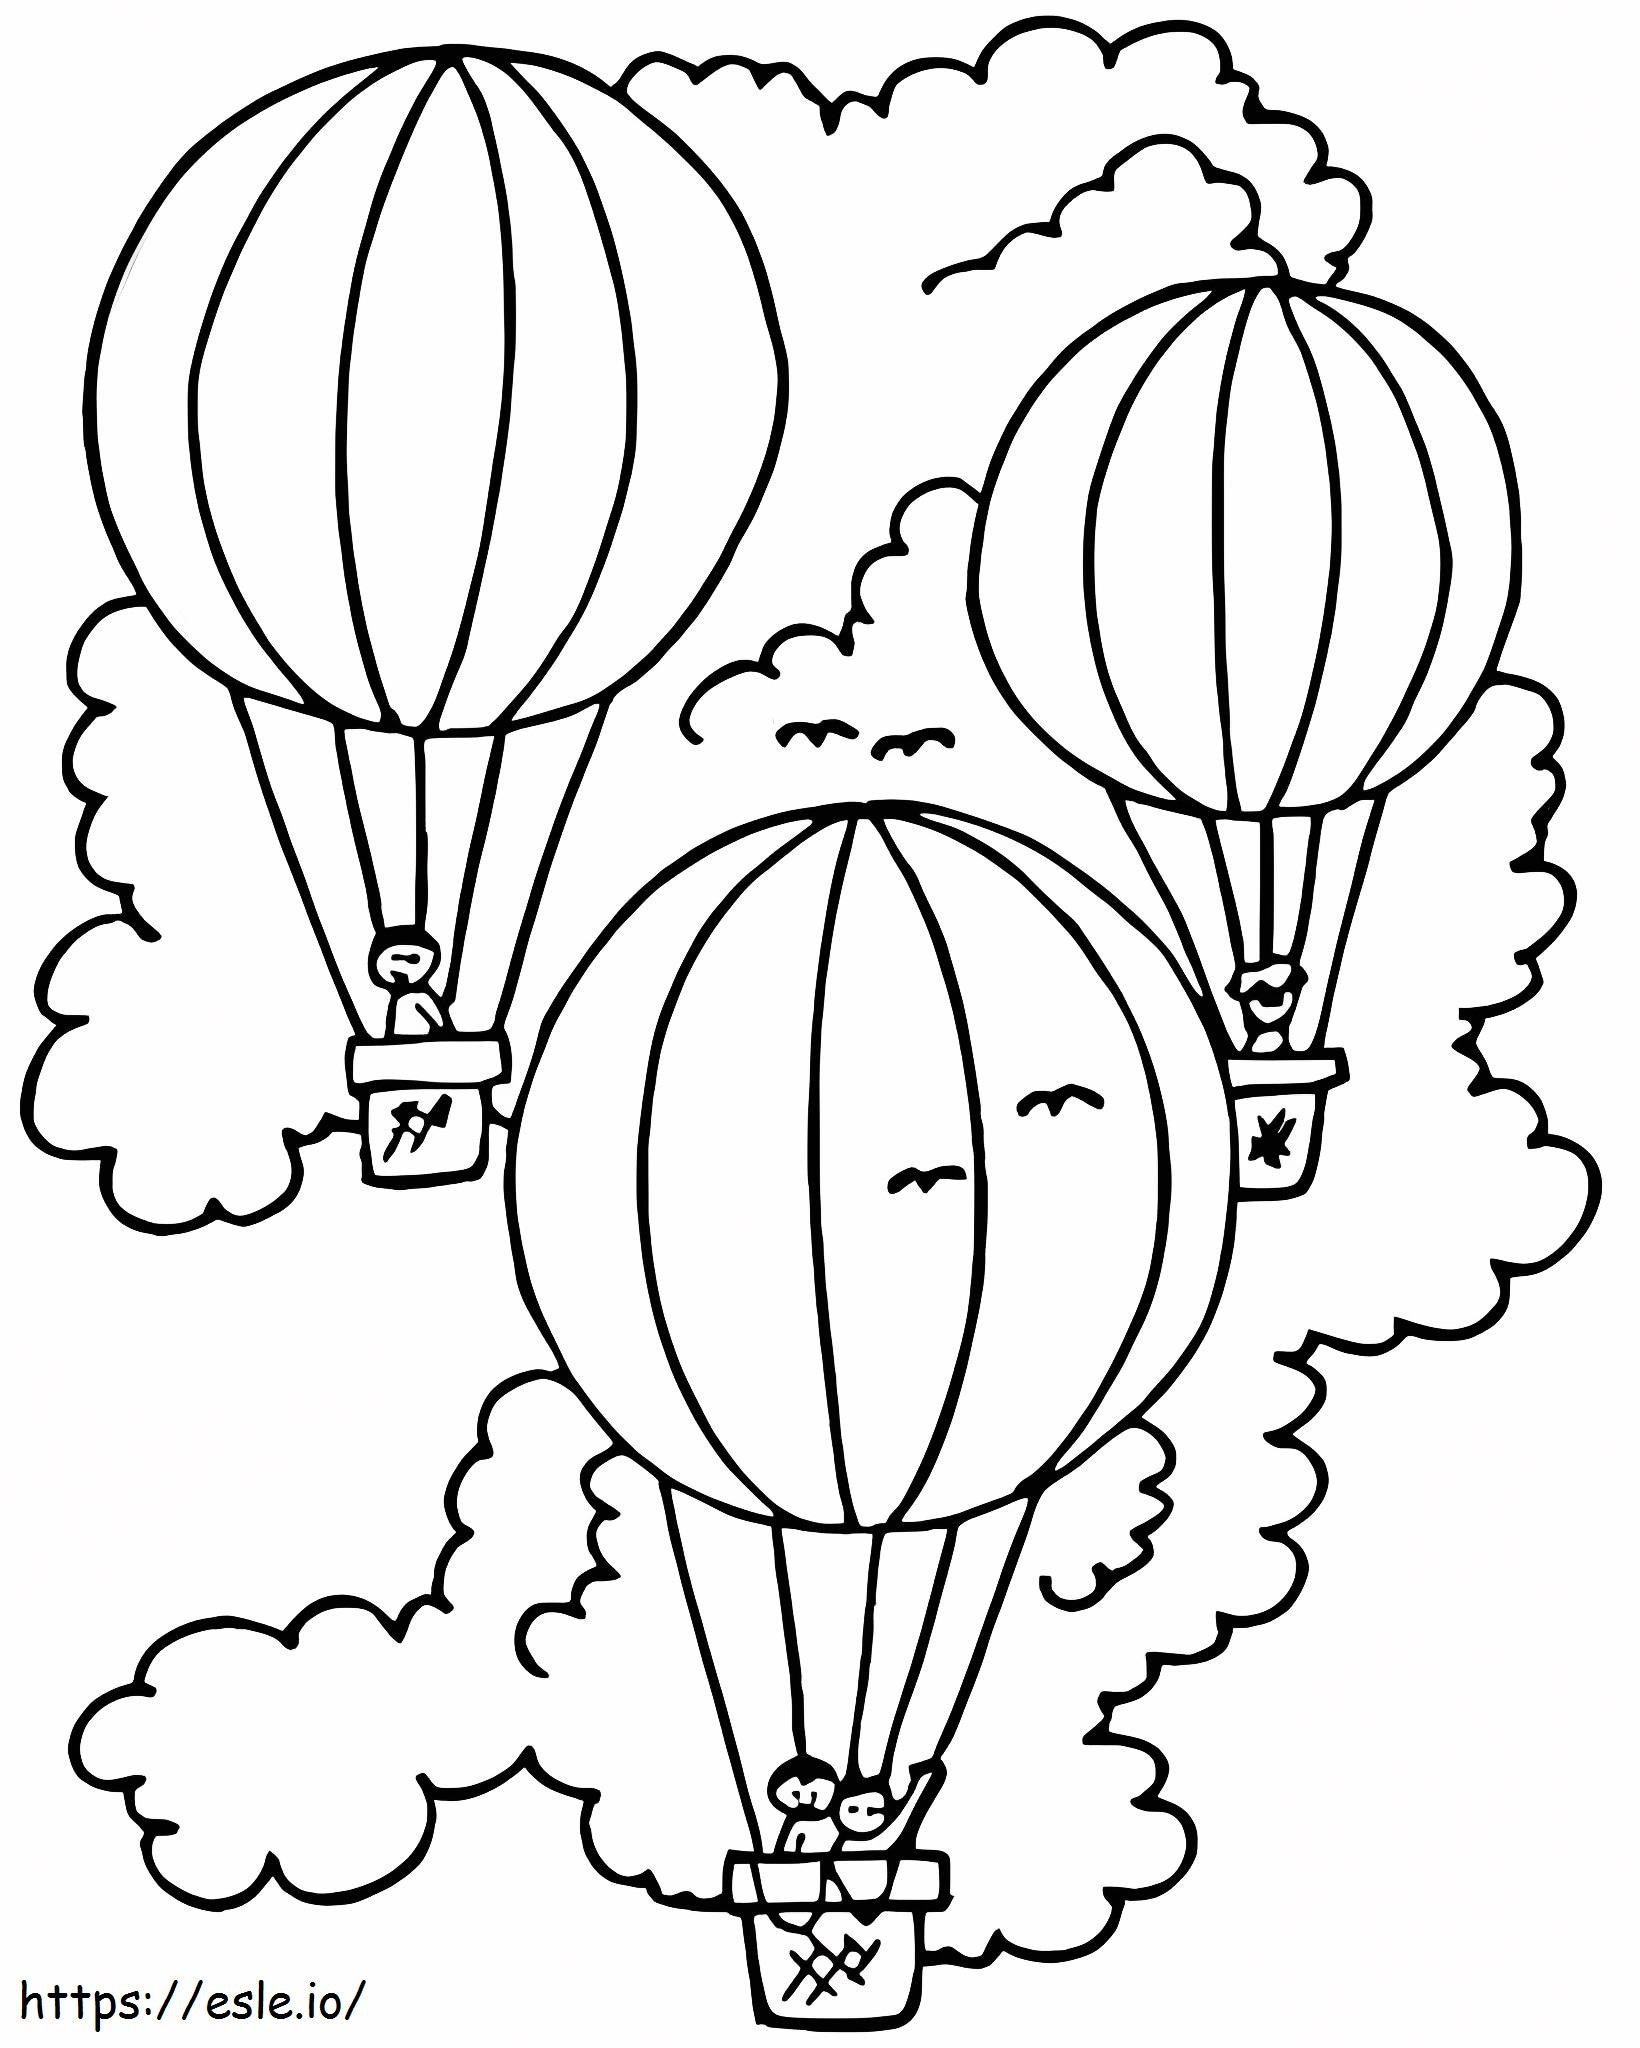 Three Hot Air Balloons 1 coloring page